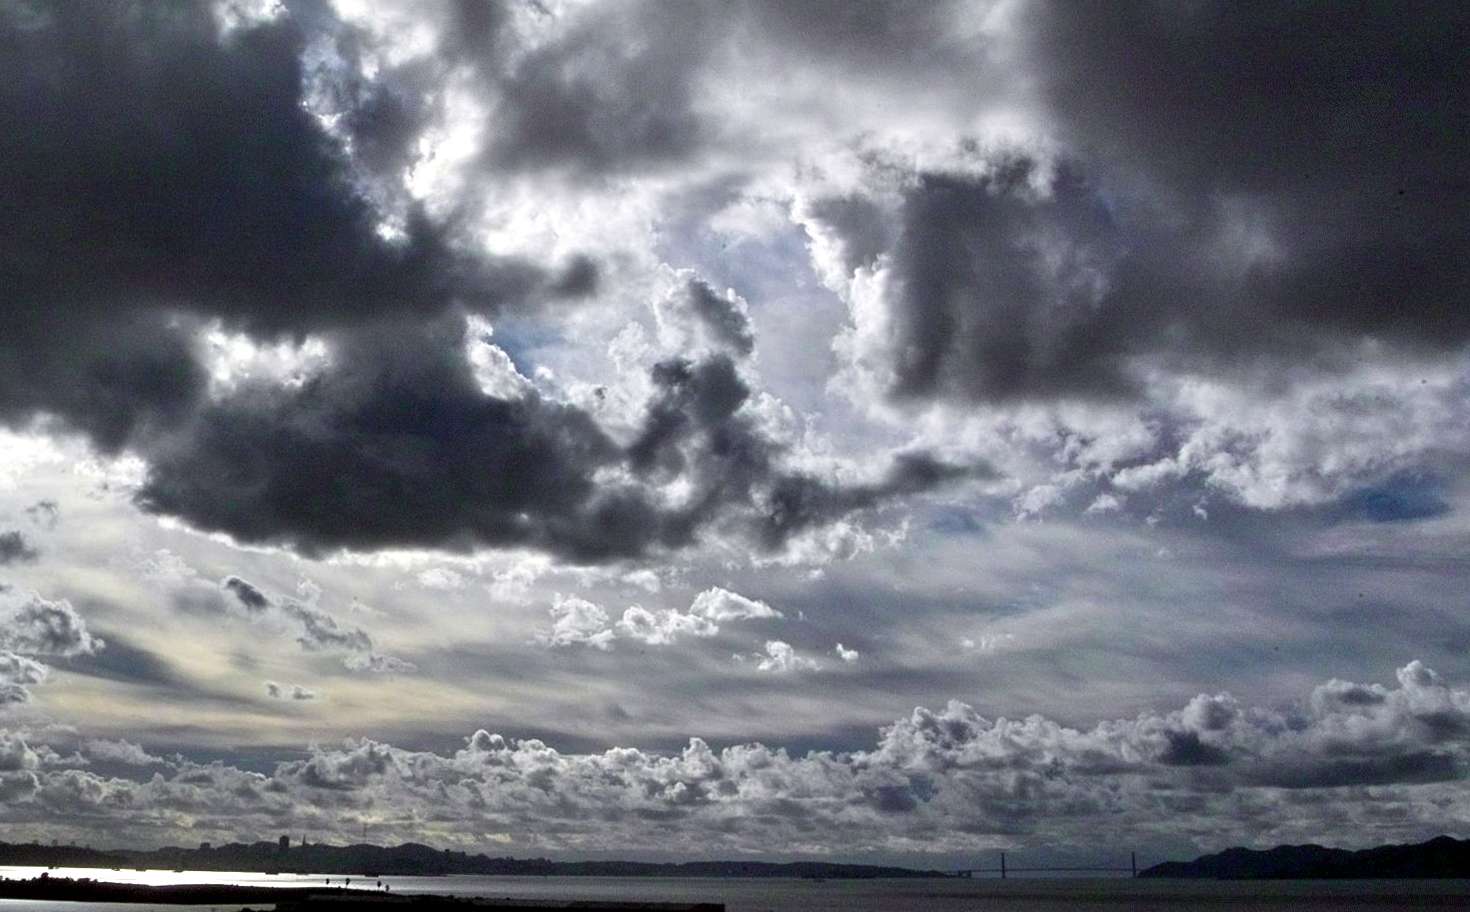 Meteo Agrigento: domani martedì 31 Ottobre cielo nuvoloso per velature.